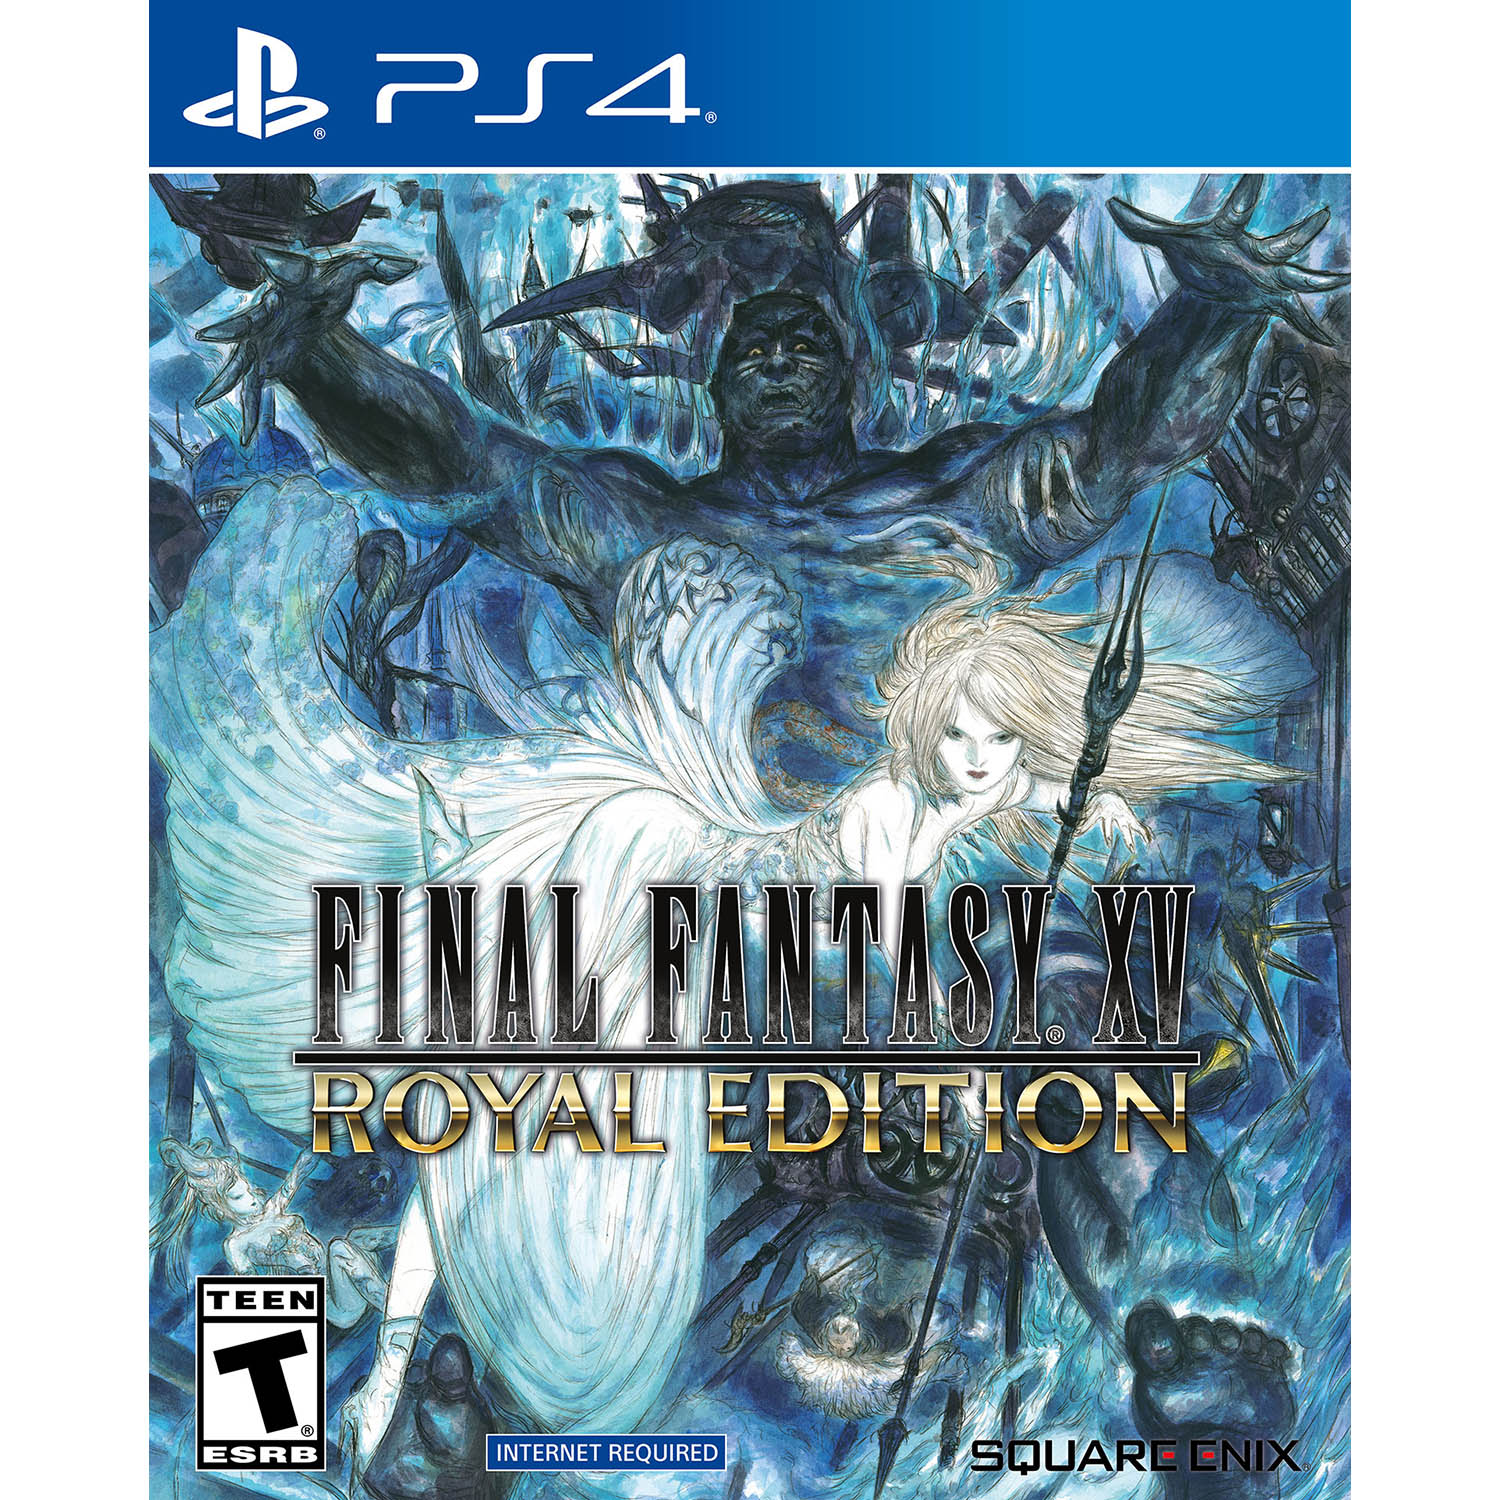 Final Fantasy XV Royal Edition - PlayStation 4 (Physical) $9.88